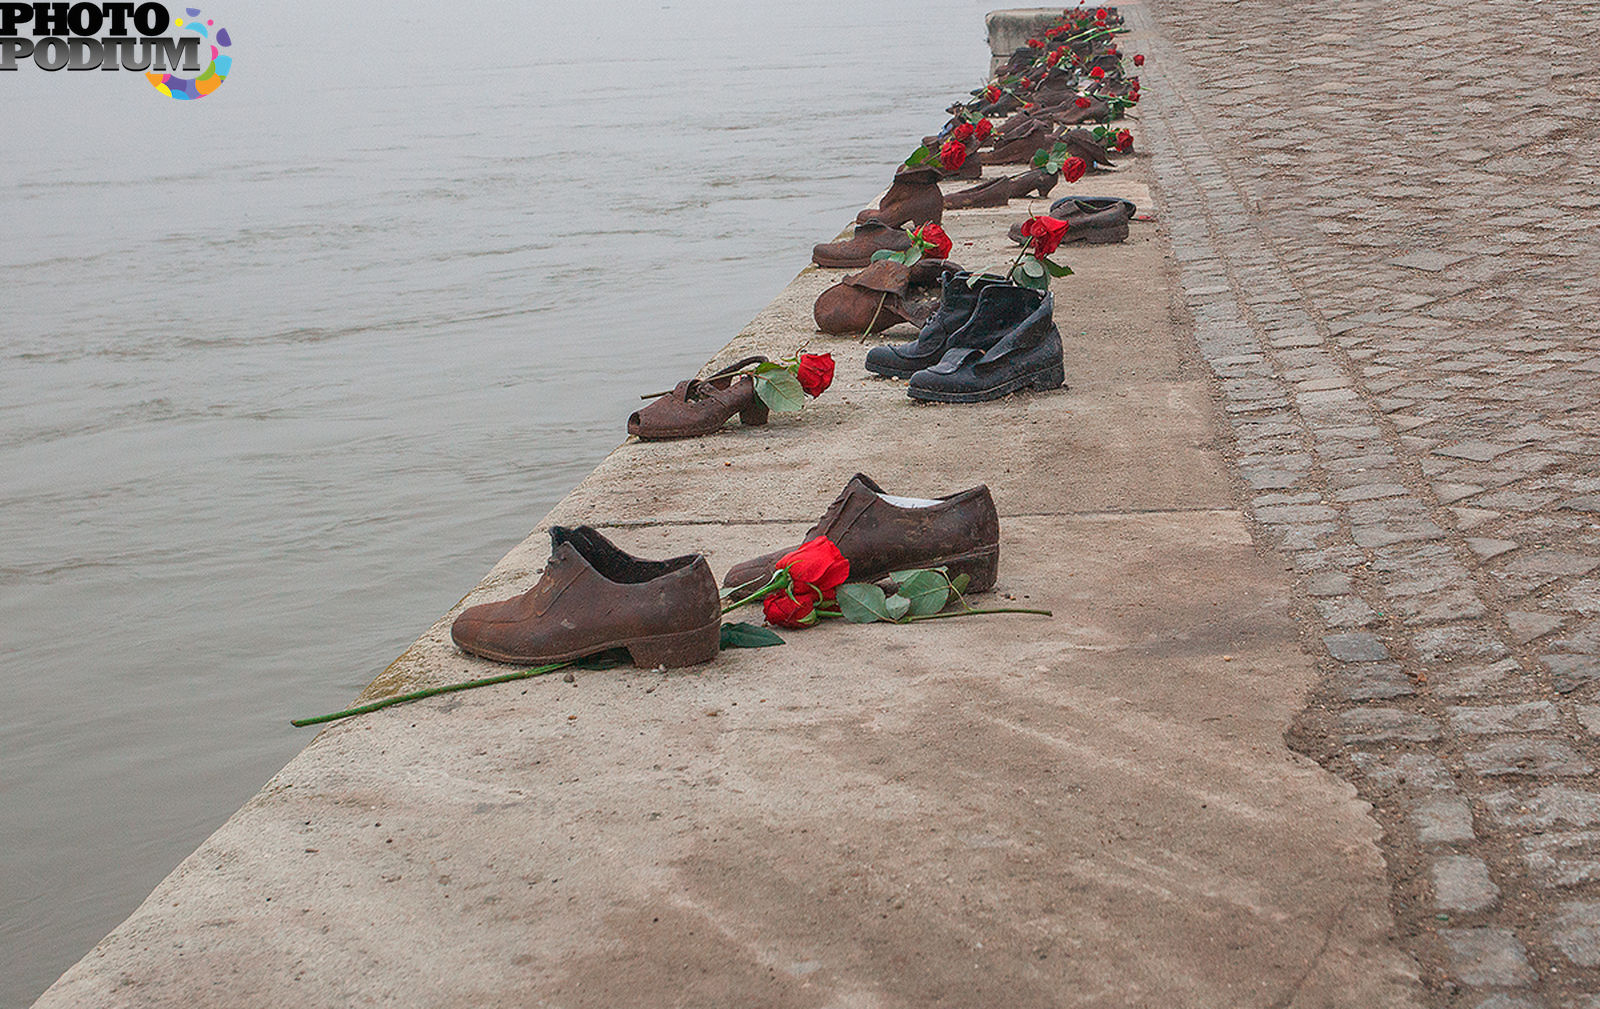 Песня вышла мадьярка на берег дуная. Мемориал "туфли на набережной Дуная". Будапешт.. Памятник обувь на набережной Дуная. Памятник в Будапеште обувь на берегу Дуная. Будапешт памятник ботинки на набережной.